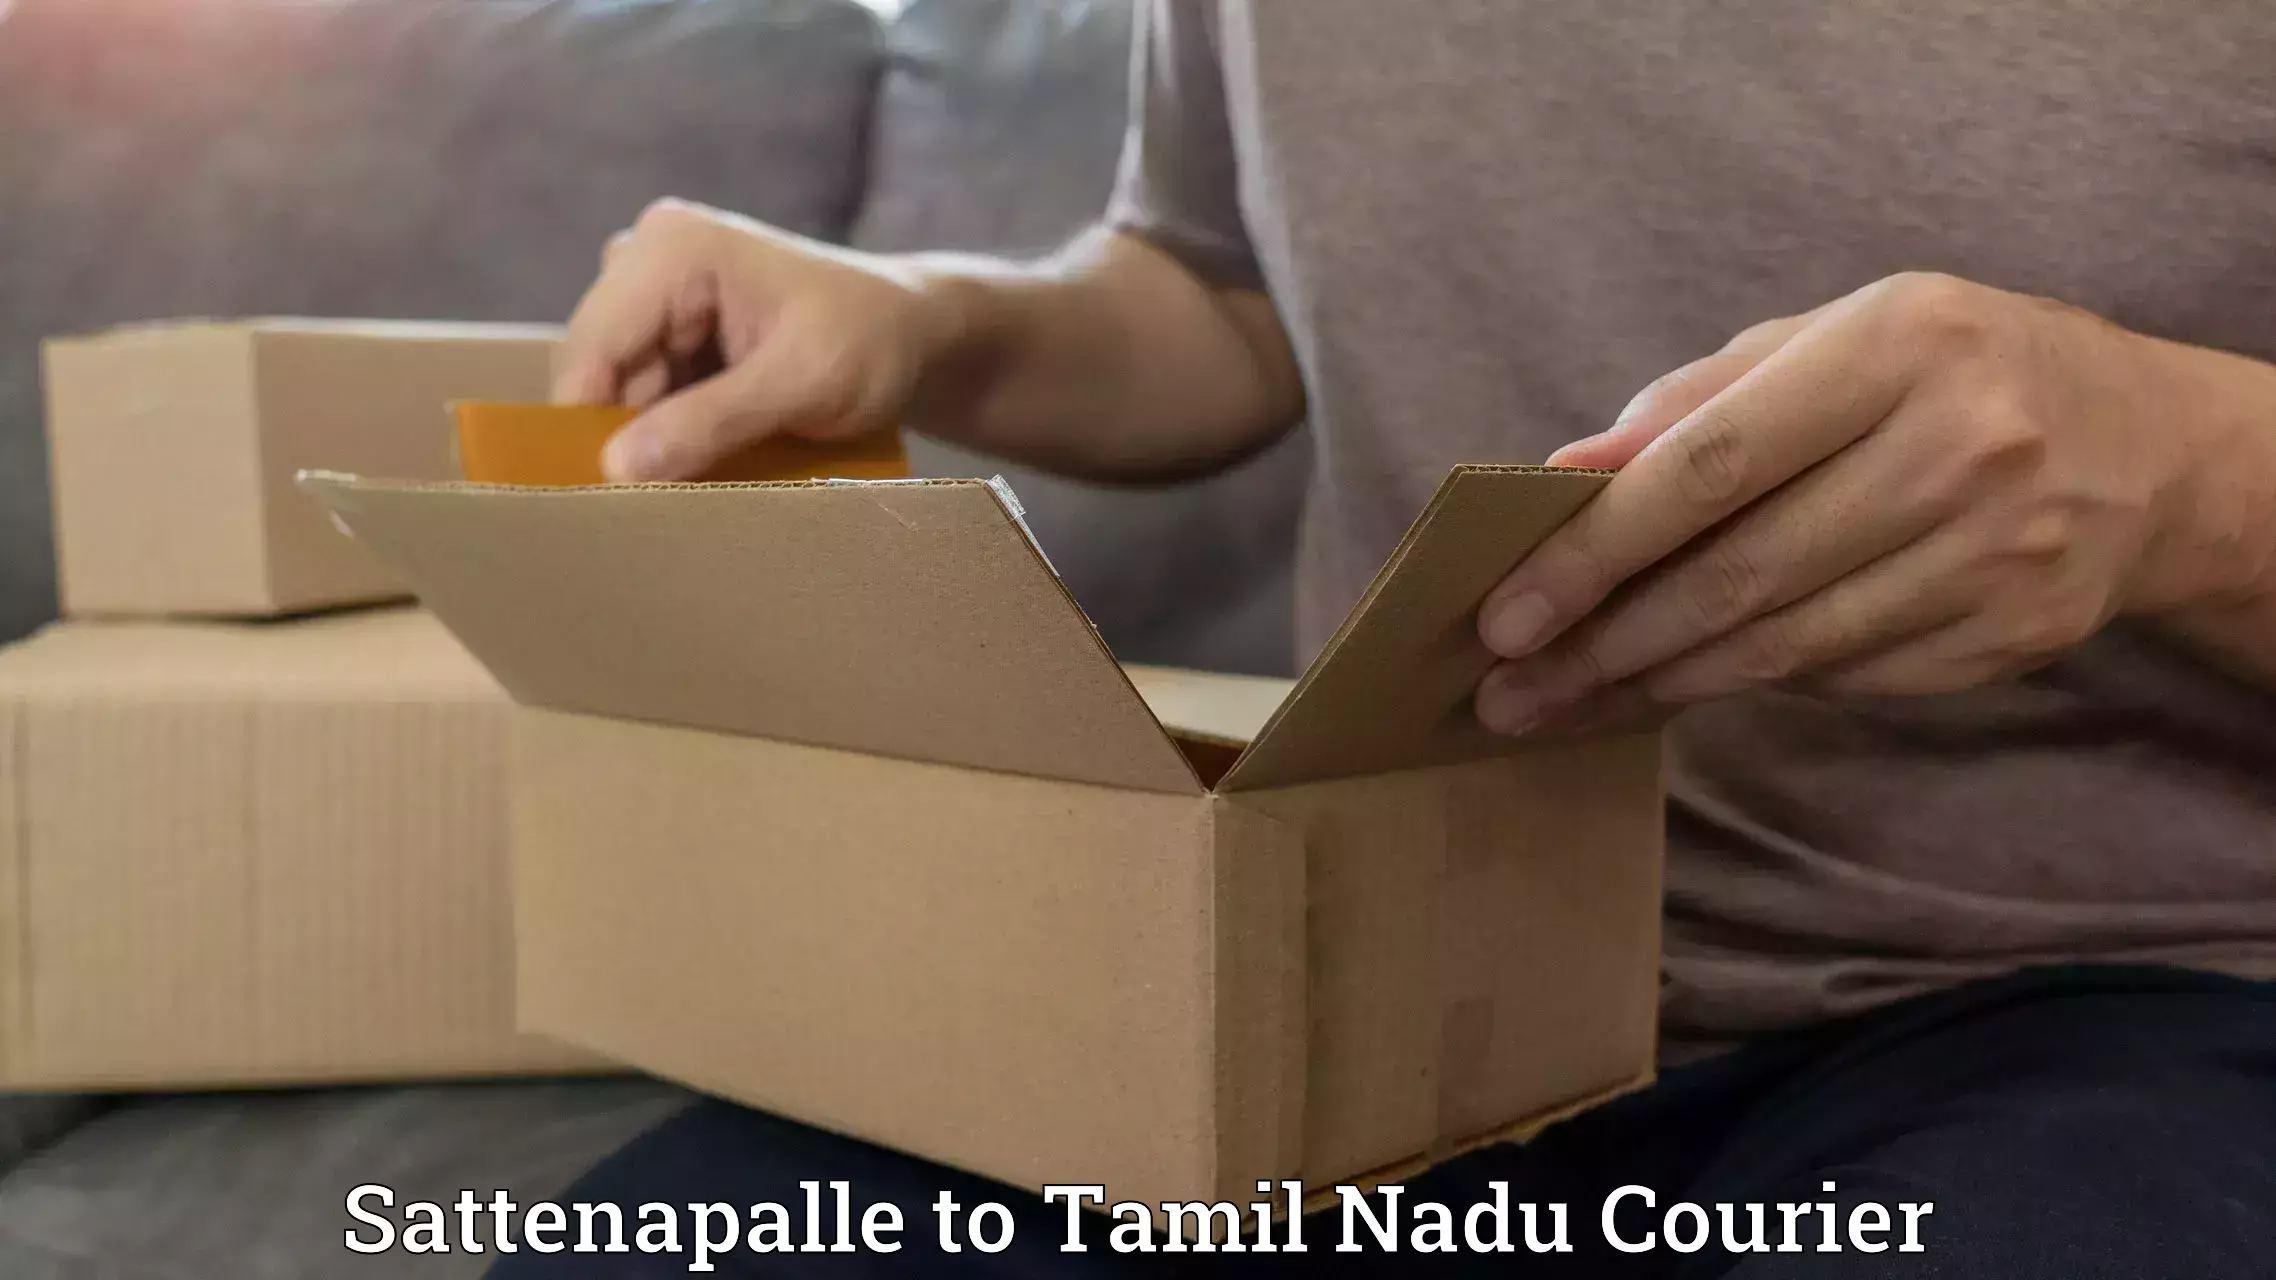 Reliable courier service Sattenapalle to Tirupattur